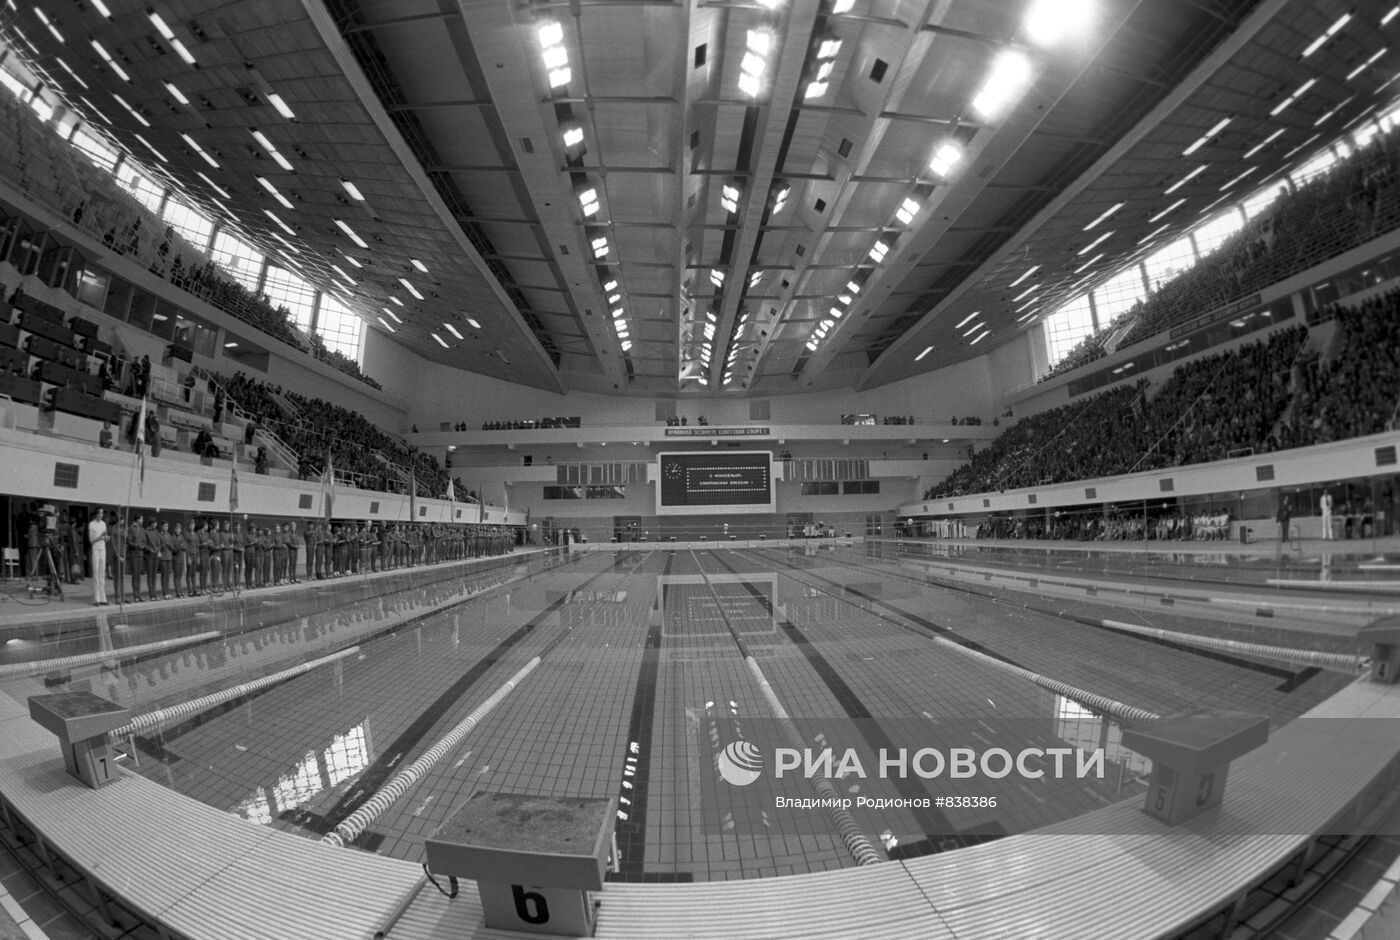 Плавательный бассейн СК "Олимпийский"